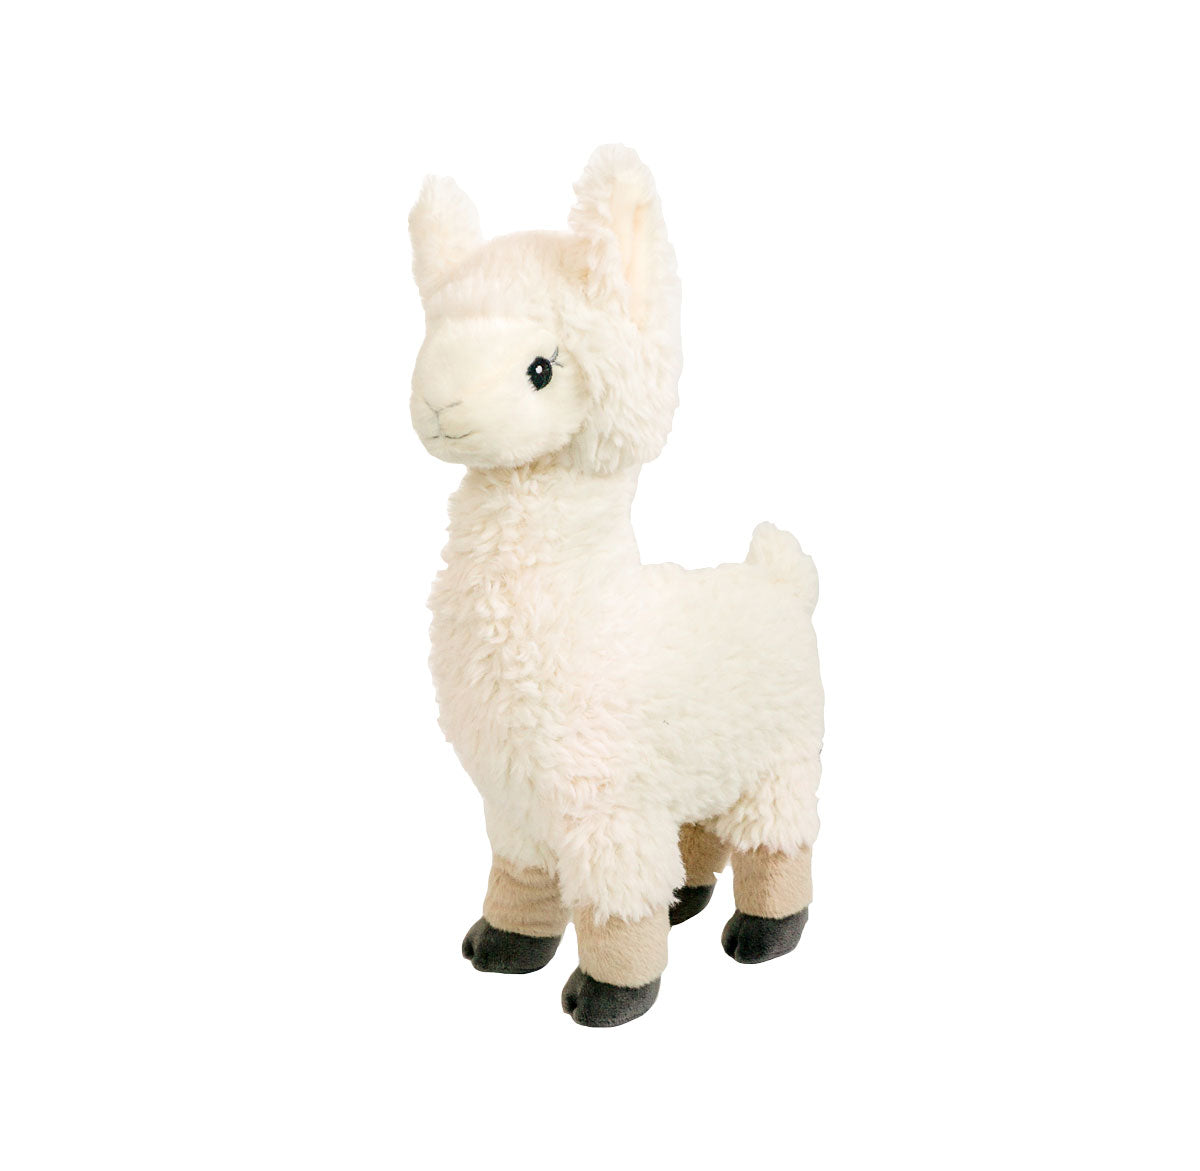 Llama plushie 16" stuffed animal 